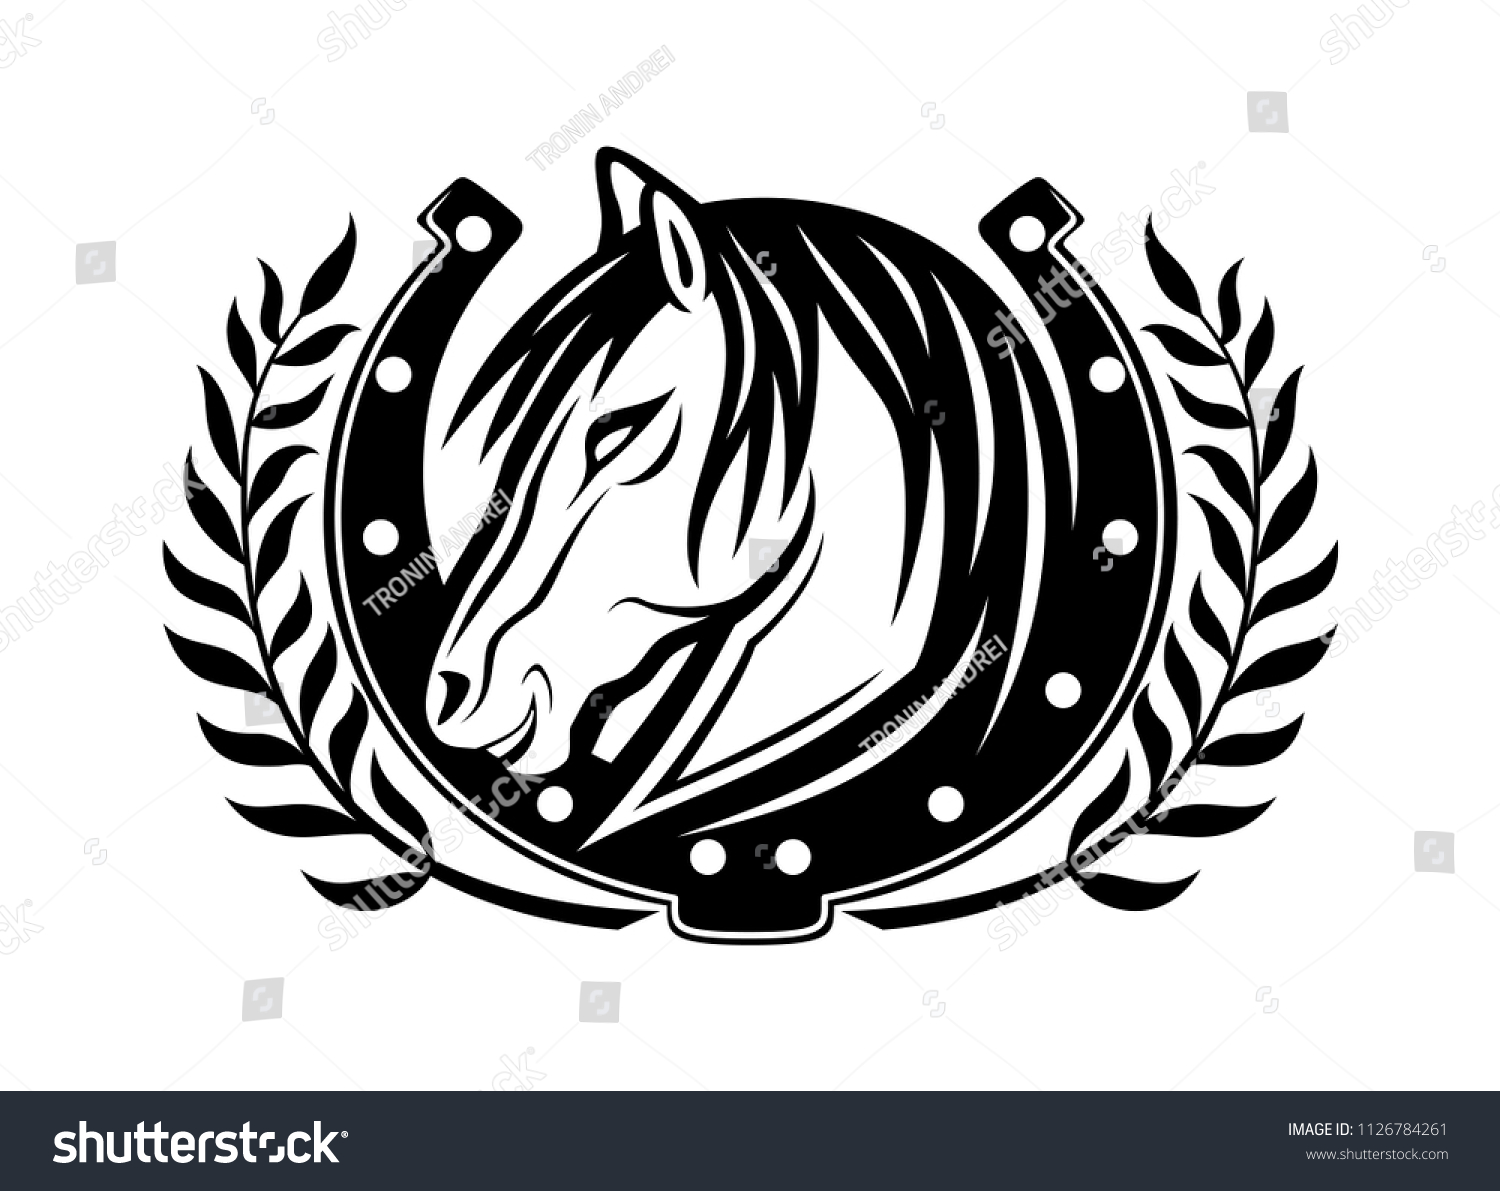 Horse Horseshoe On White Background Stock Vector (Royalty Free ...